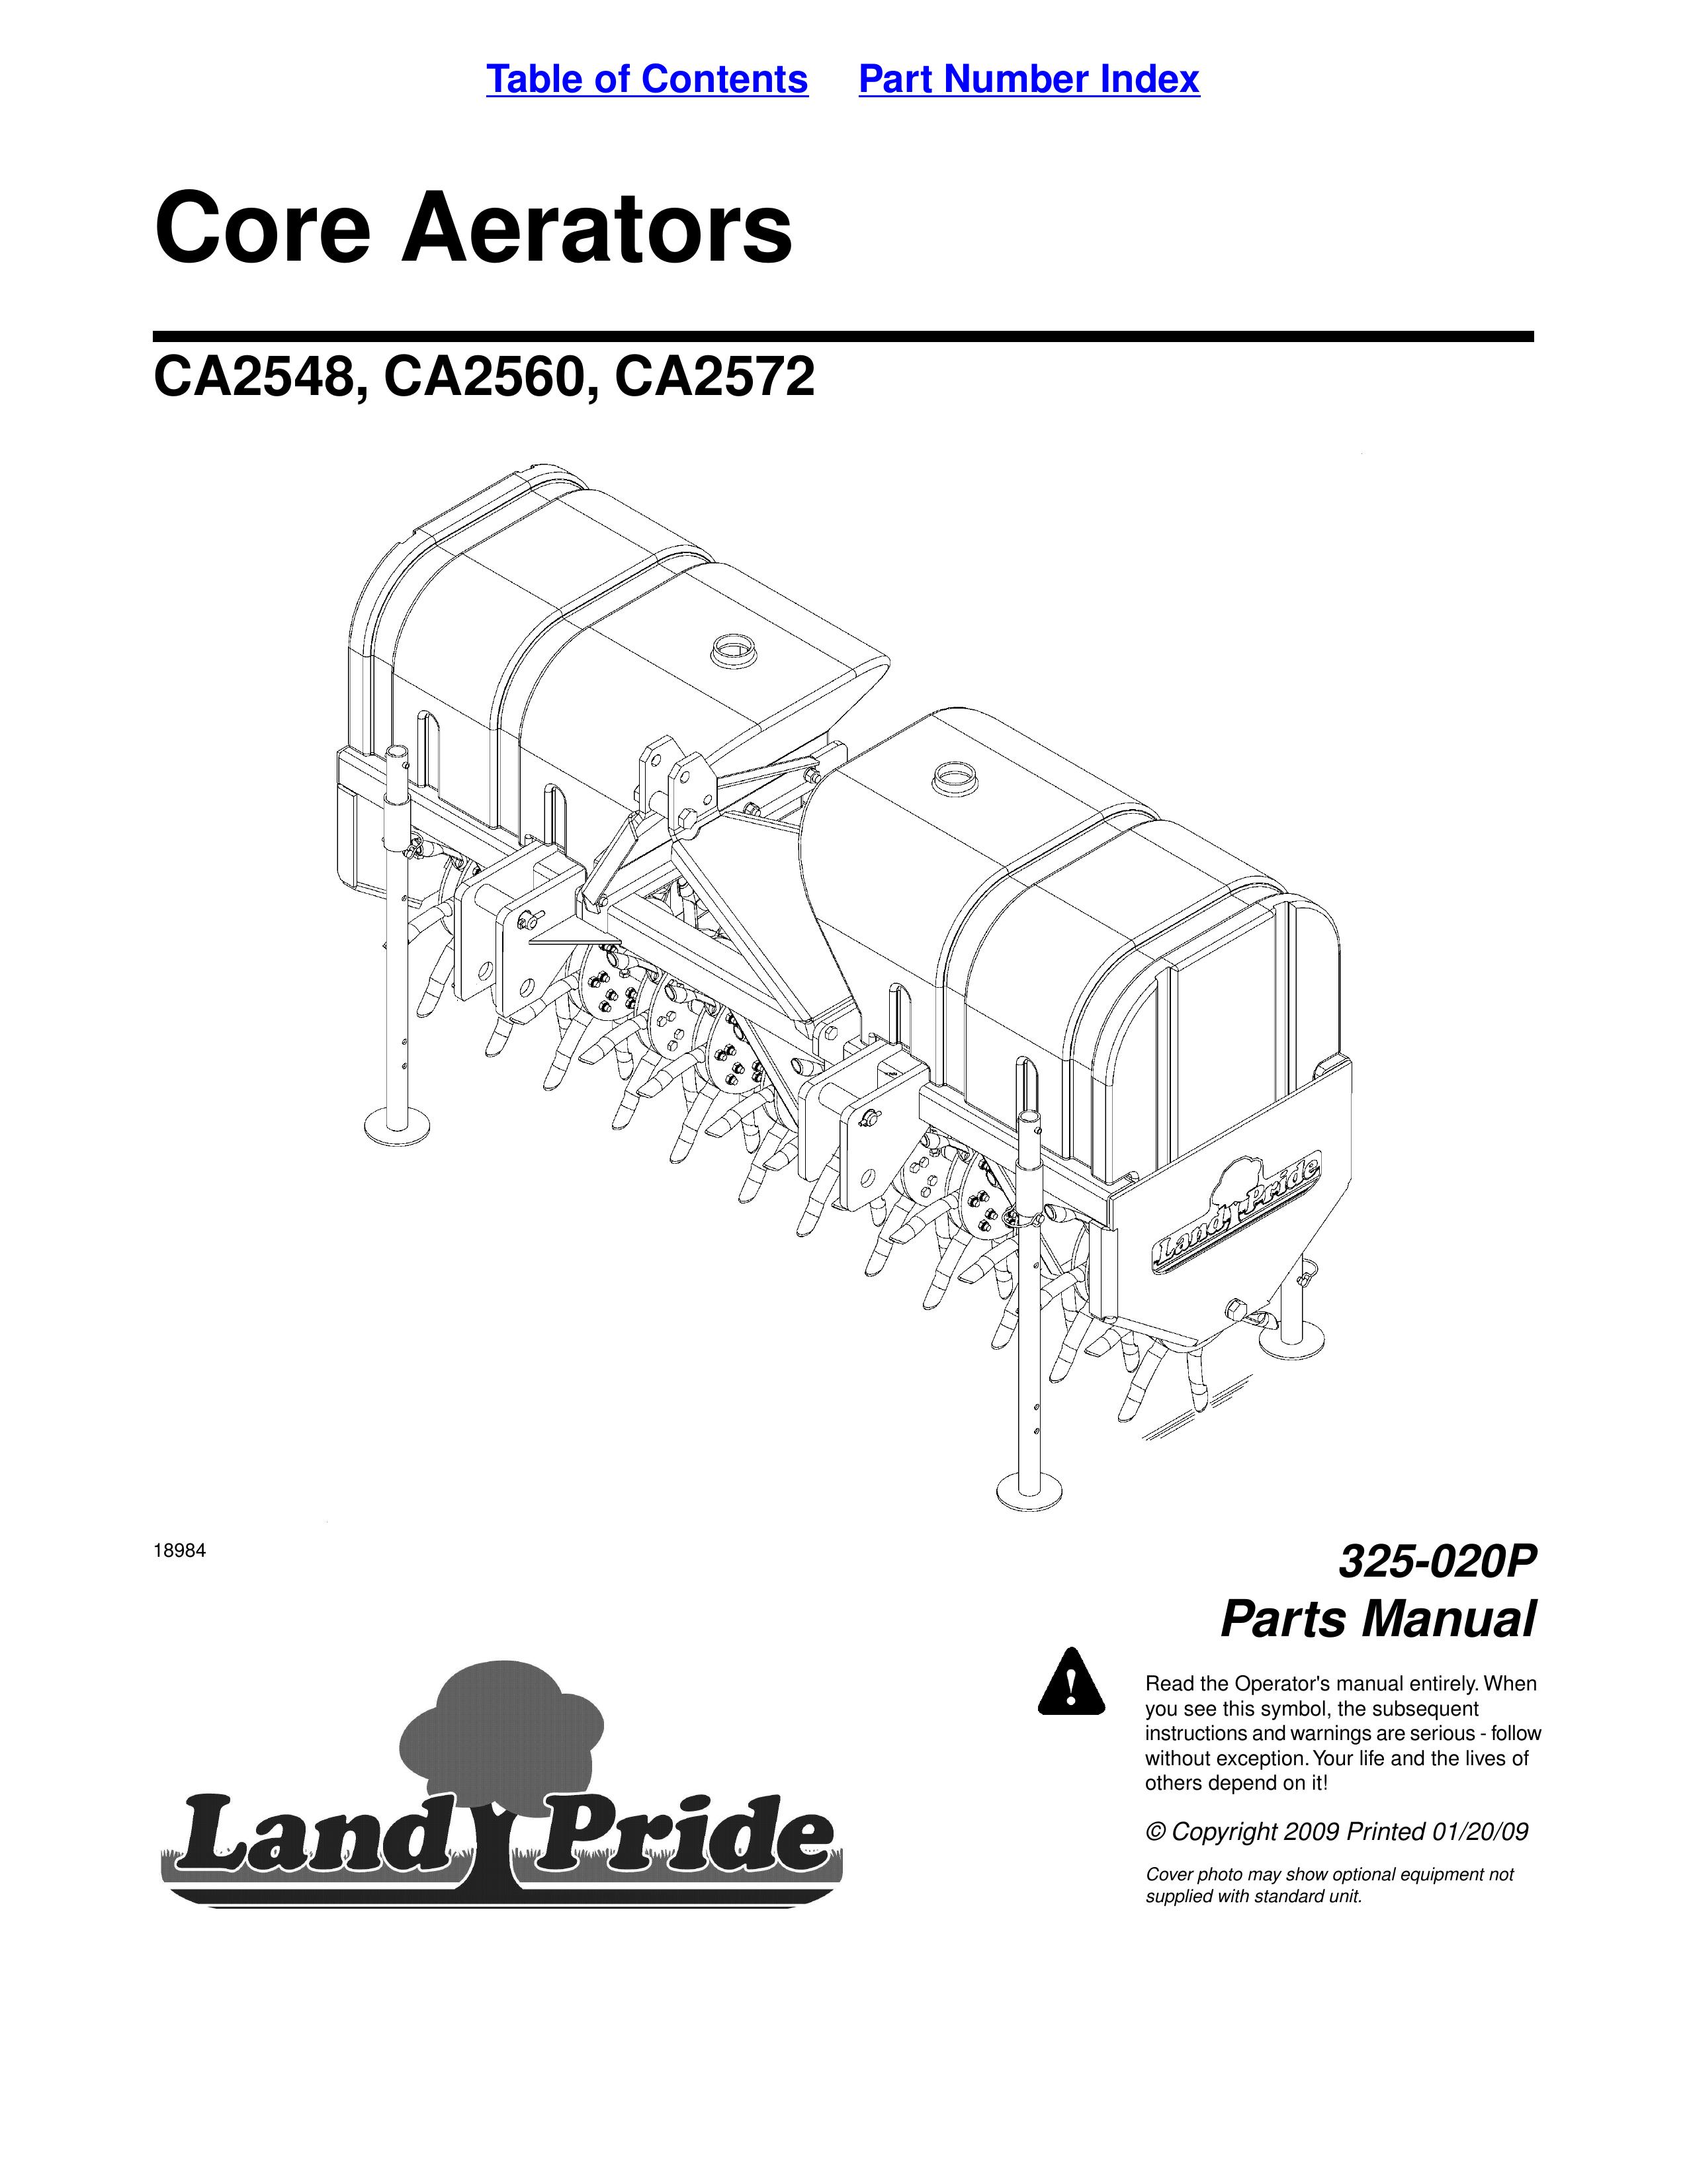 Land Pride CA2572 Lawn Aerator User Manual